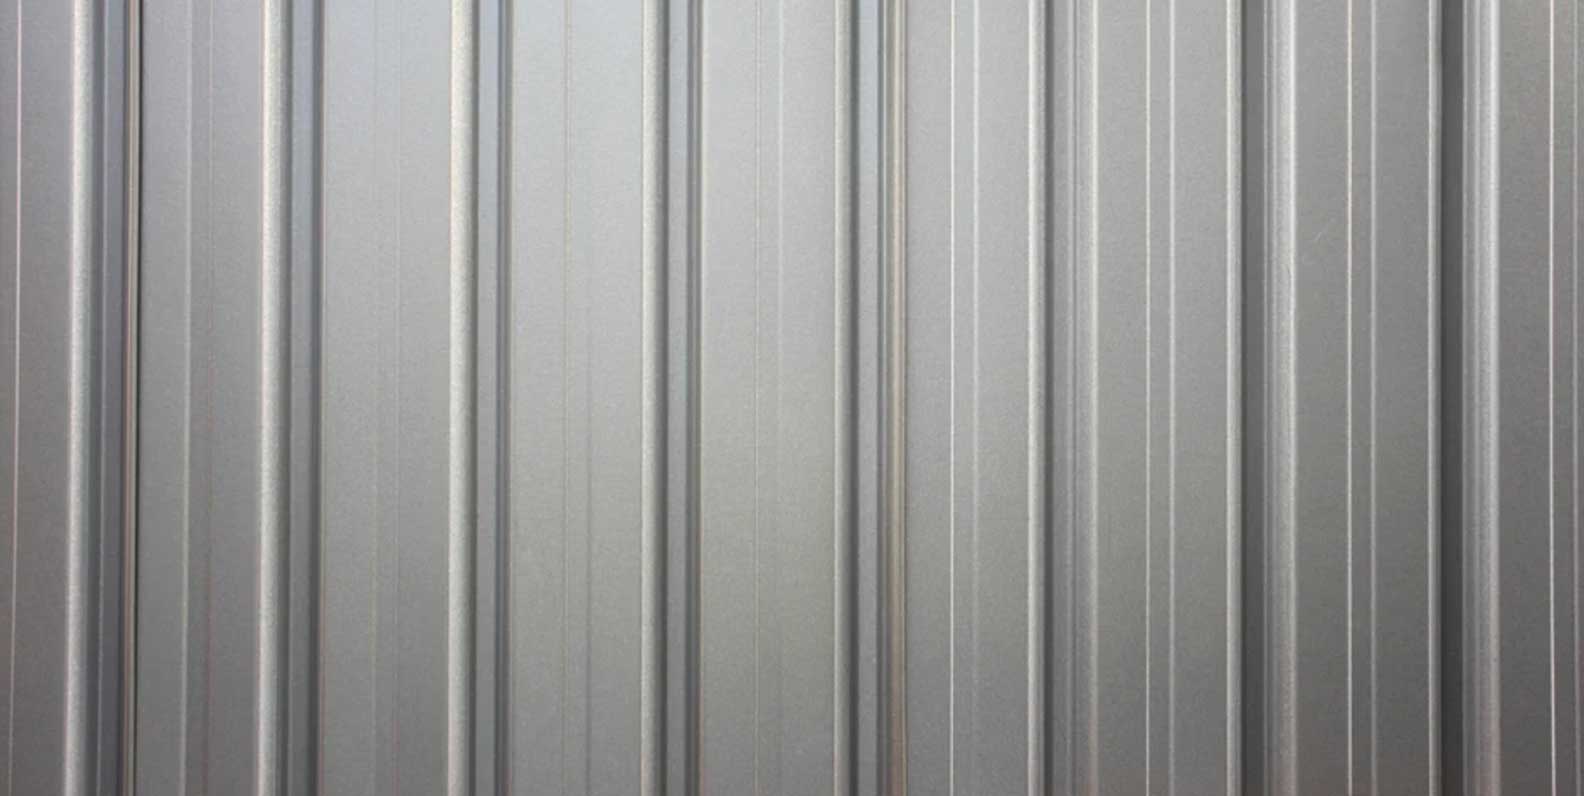 steel sheet roofing texture